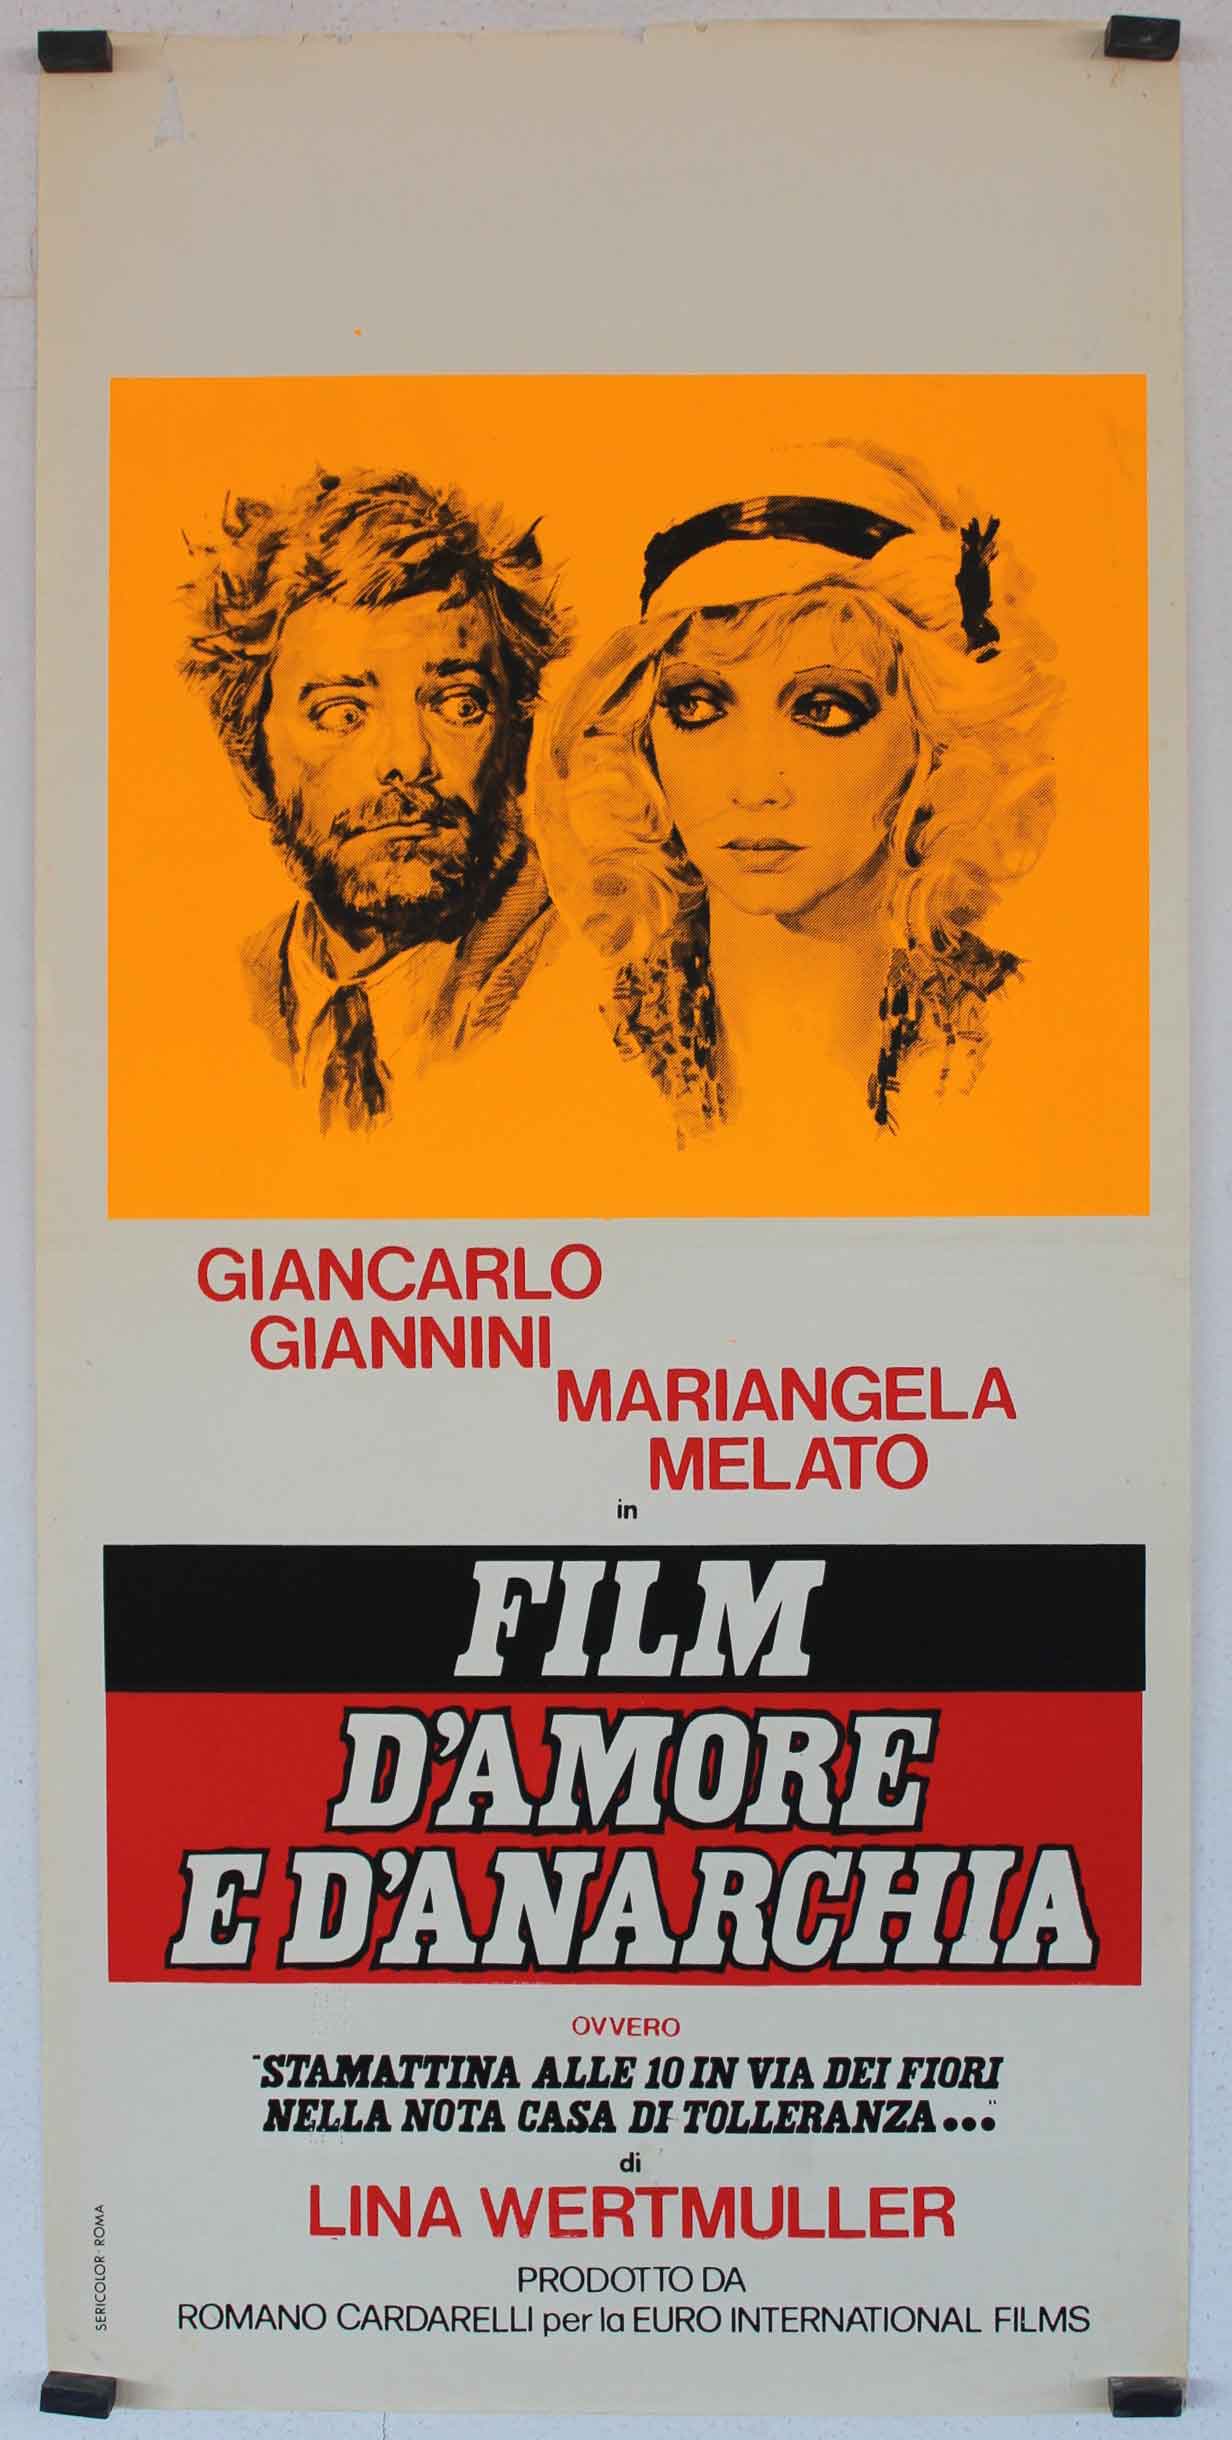 FILM DAMORE E DANARCHIA